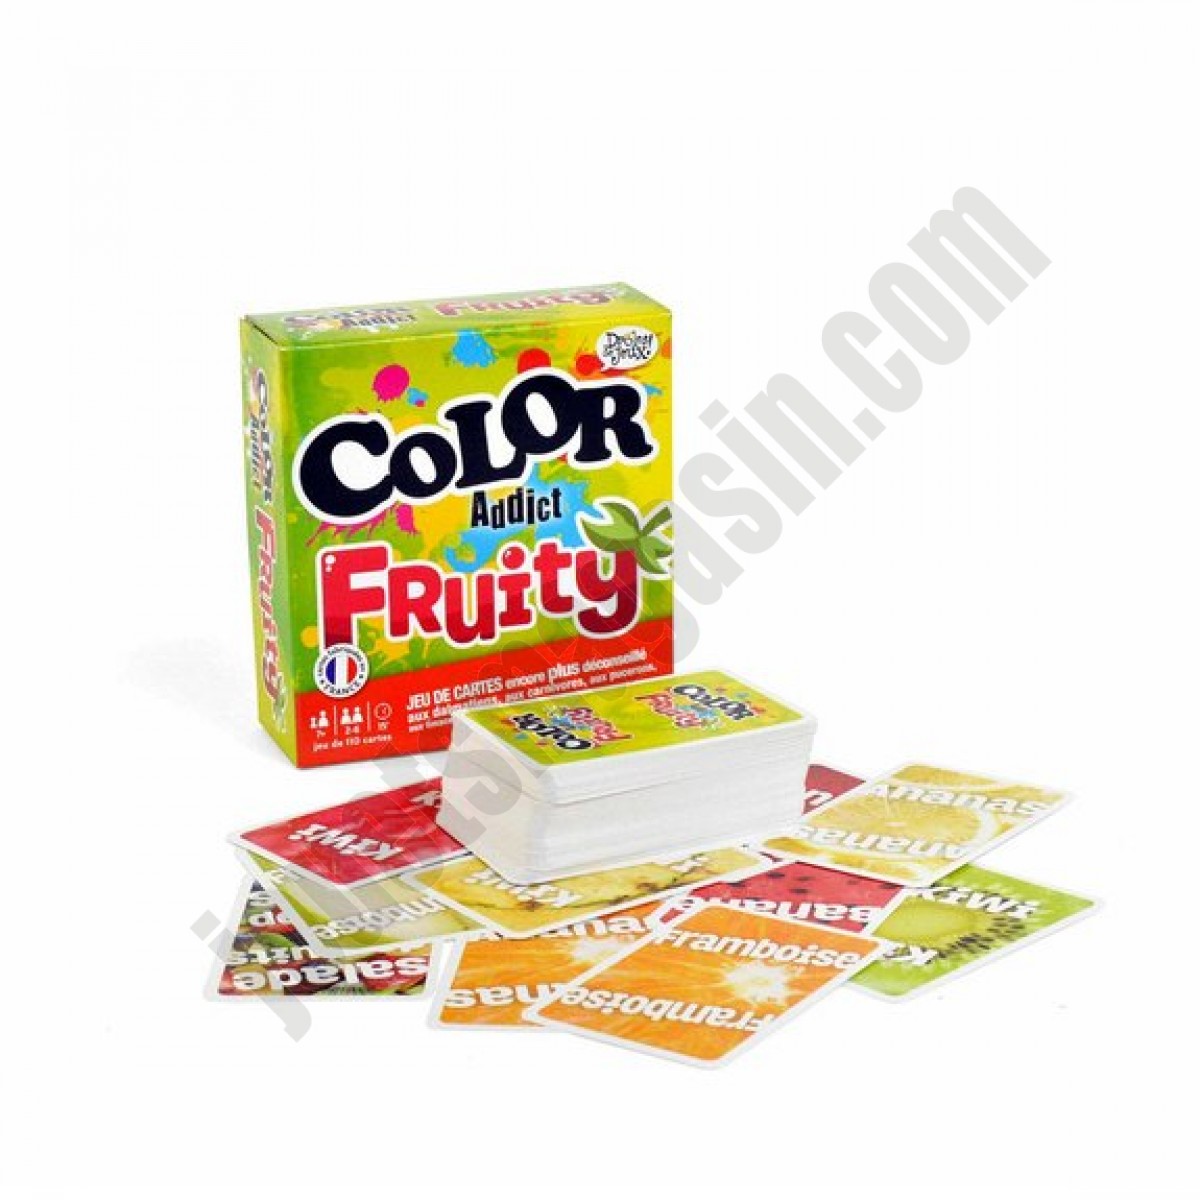 Color addict fruity ◆◆◆ Nouveau - Color addict fruity ◆◆◆ Nouveau